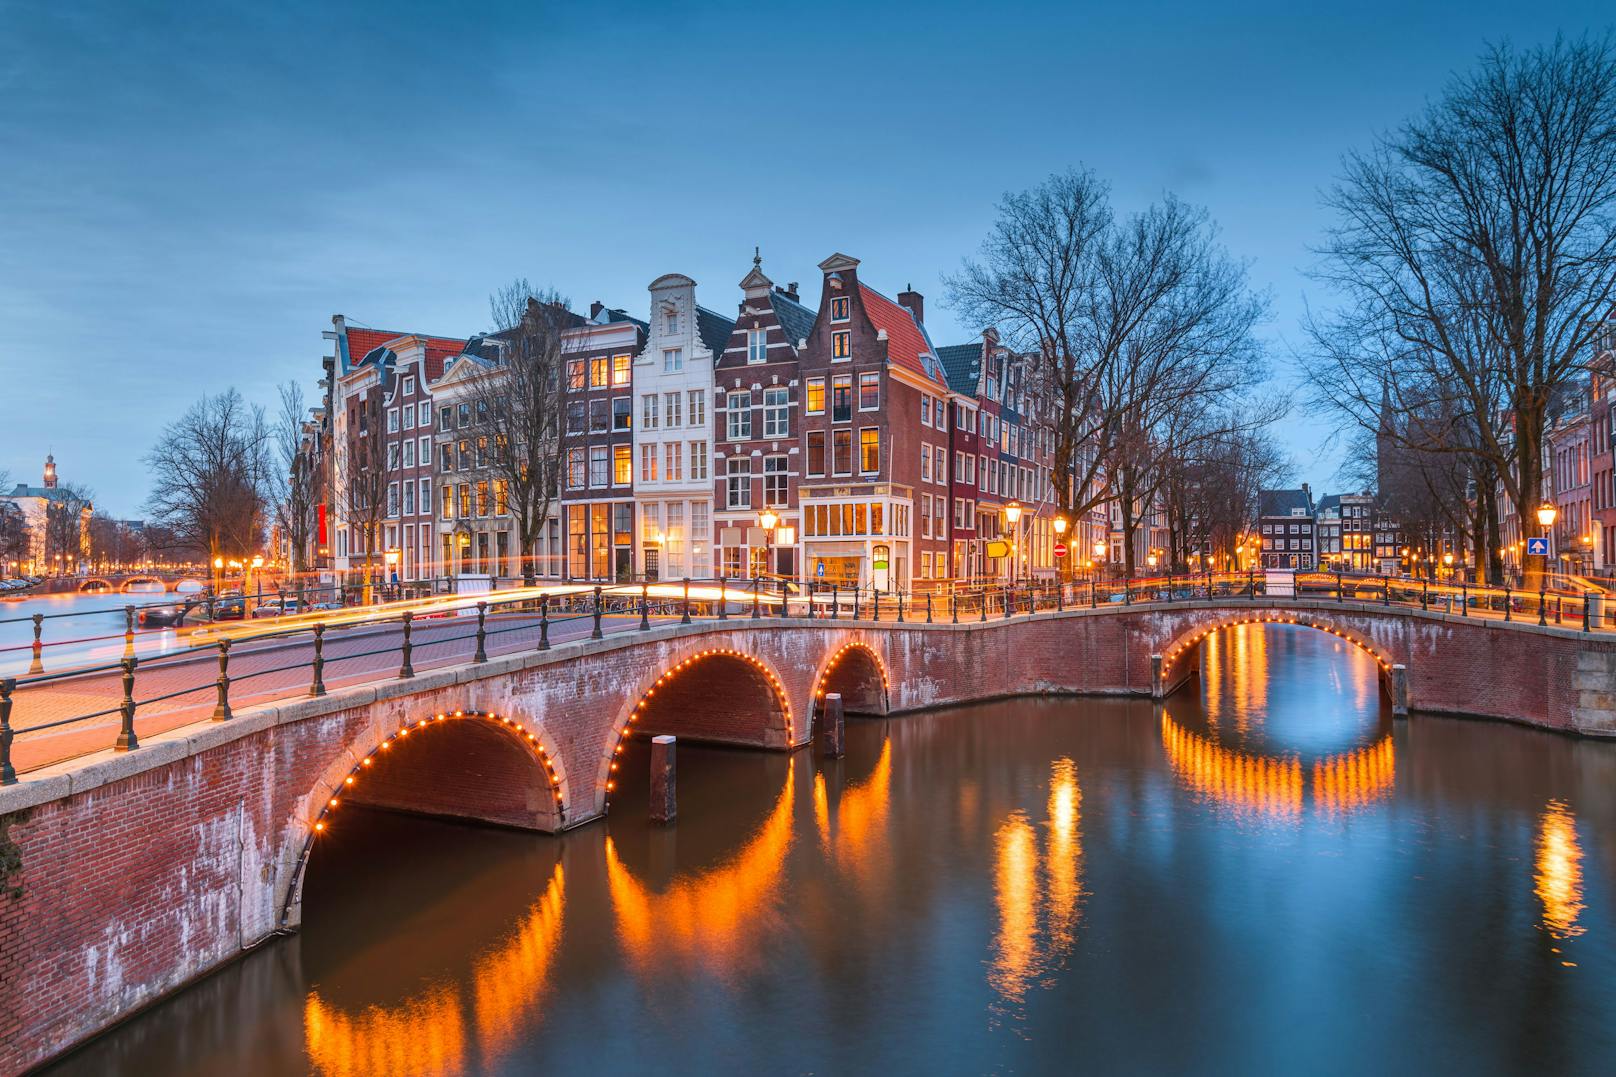 Zwischen den Grachten, Brücken und Gassen kann man in Amsterdam unglaublich viel entdecken.